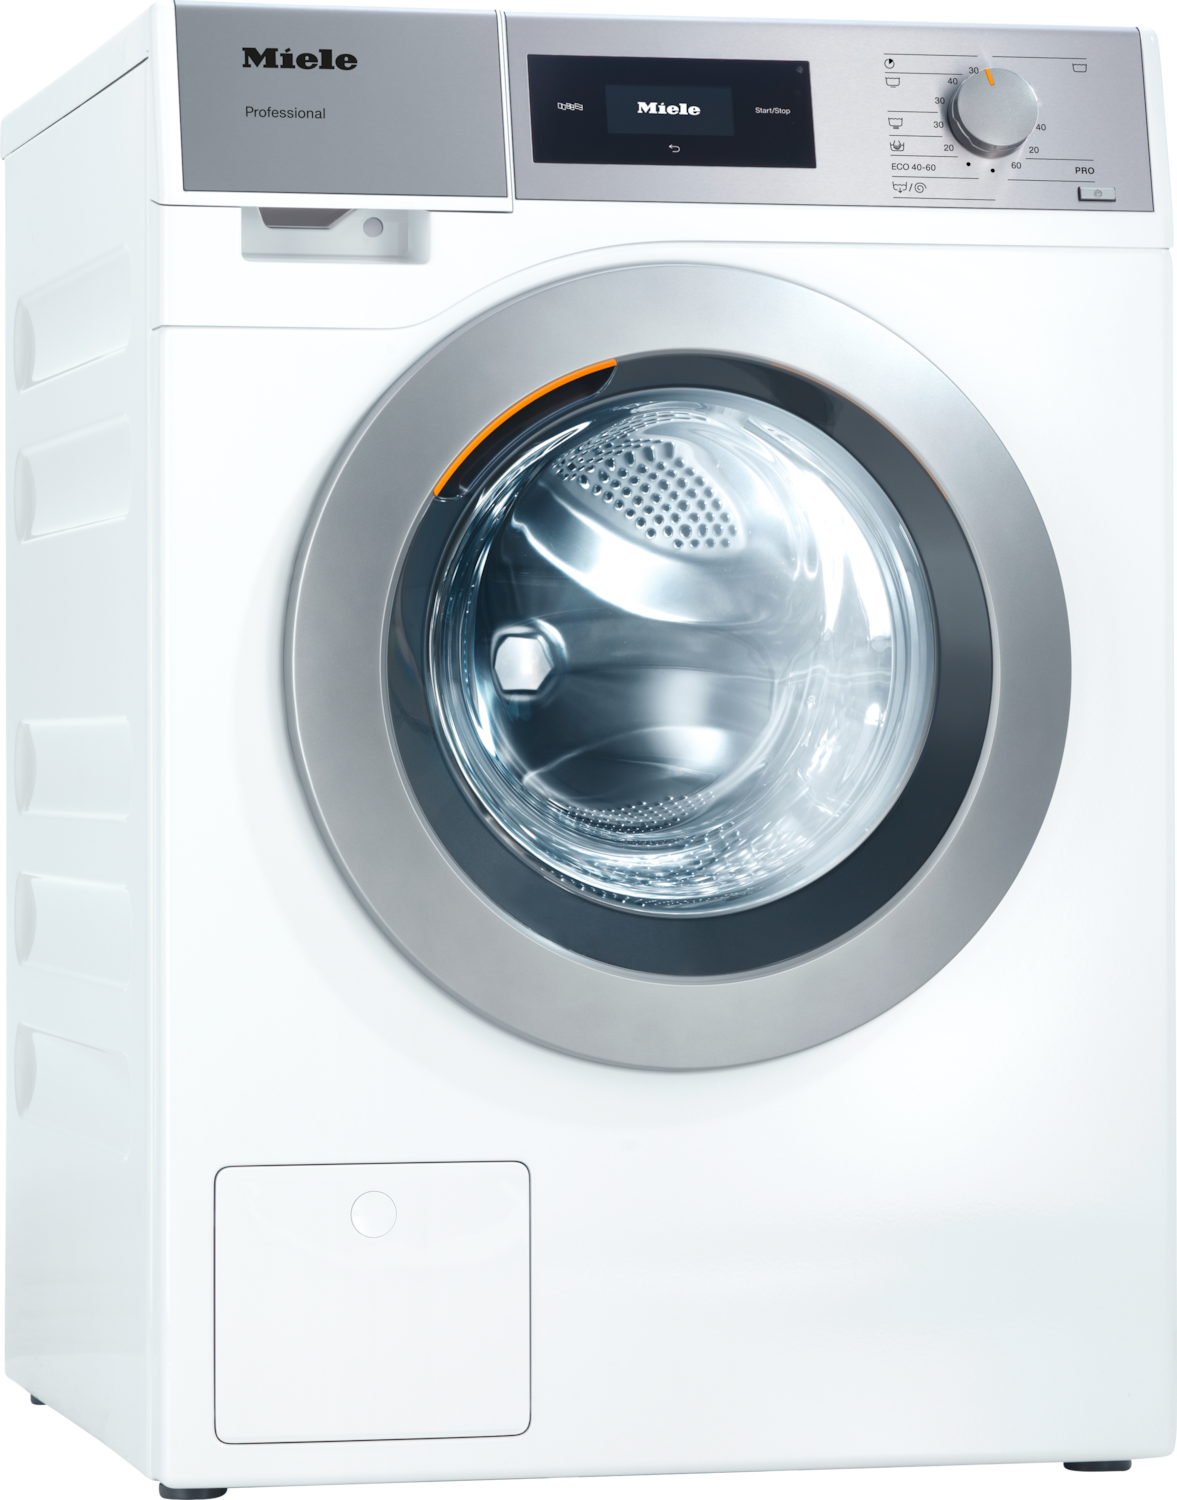 PWM 307 [EL DP] Professional Waschmaschine, Kleiner Riese, elektrobeheizt, mit Ablaufpumpe Produktbild Front View ZOOM